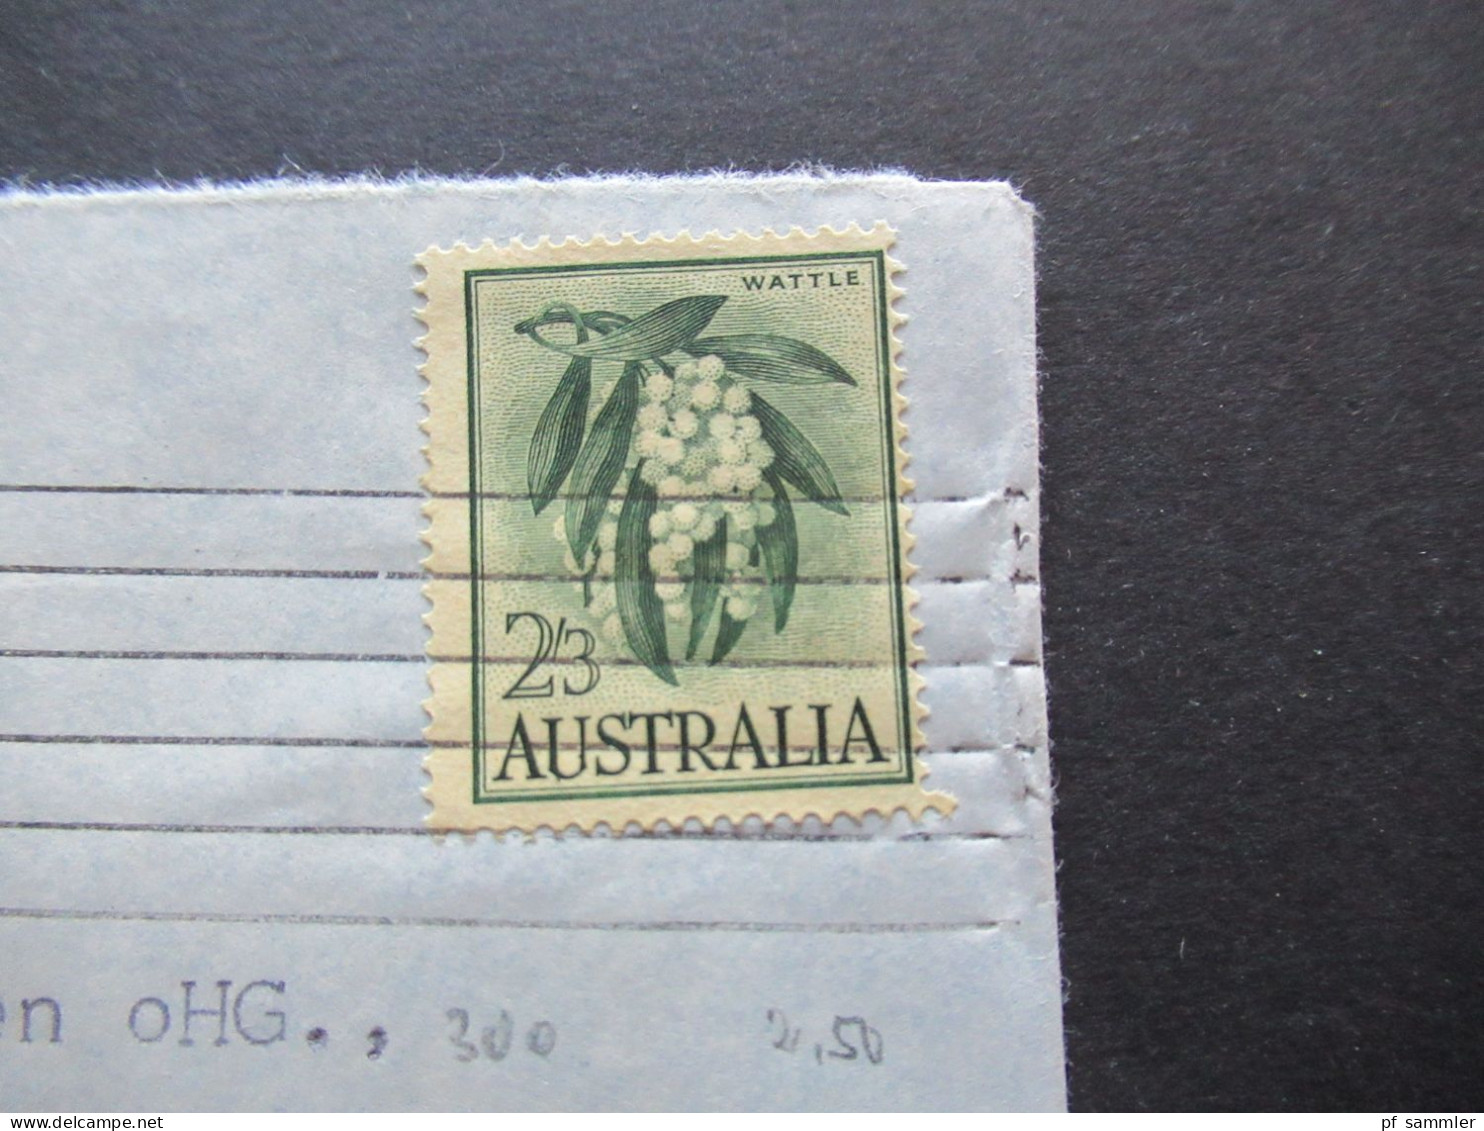 Australien 1964 By Air Mail Sydney - Menden Sauerland Briefmarke Wattle 2/3 - Covers & Documents